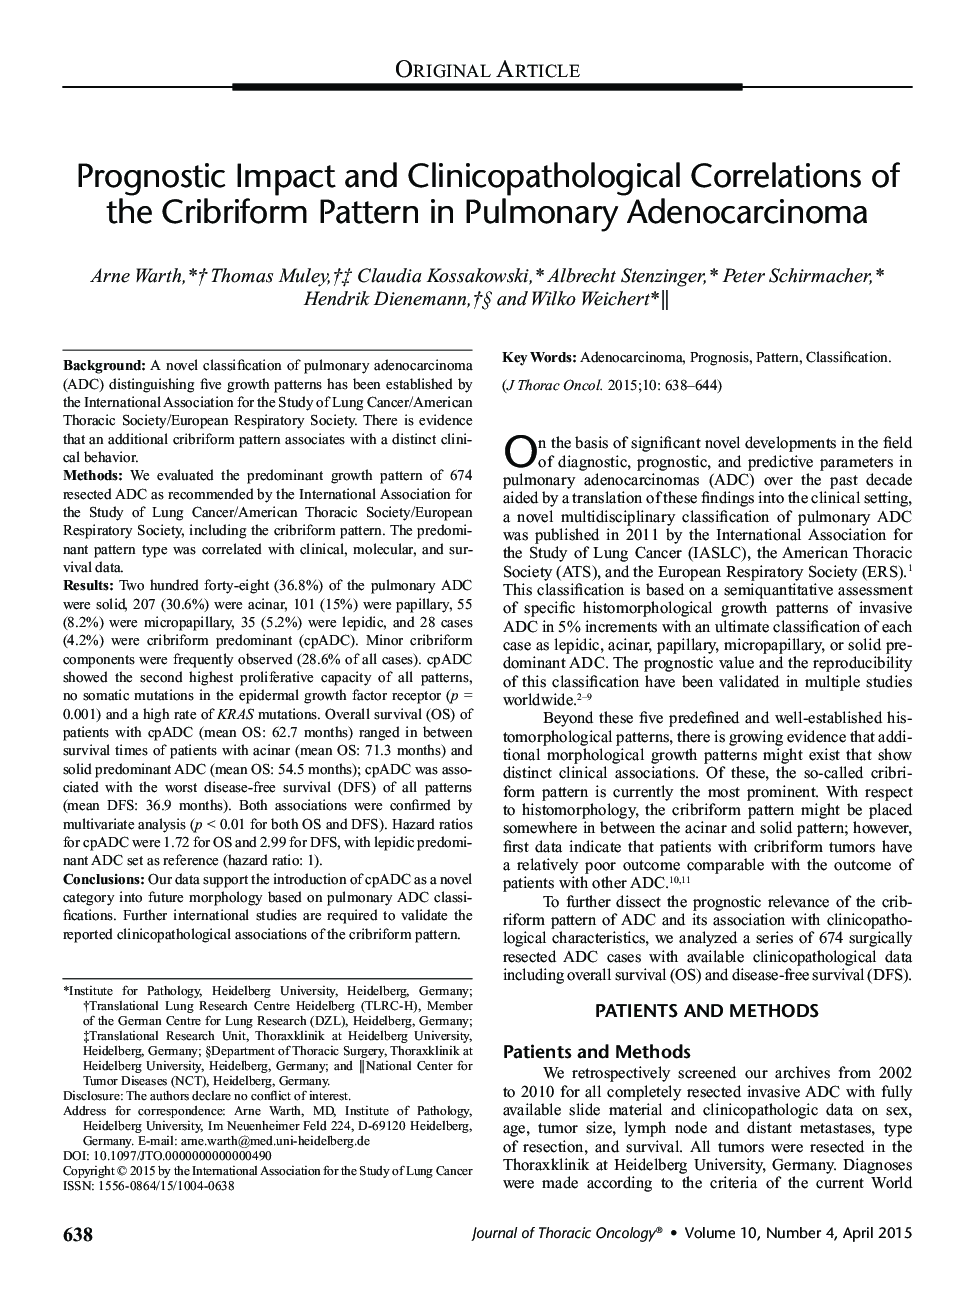 تأثیر پیش آگهی و همبستگی کلینیکوپاتولوژیک الگوی کریبرومورف در آدنوکارسینوم ریه 